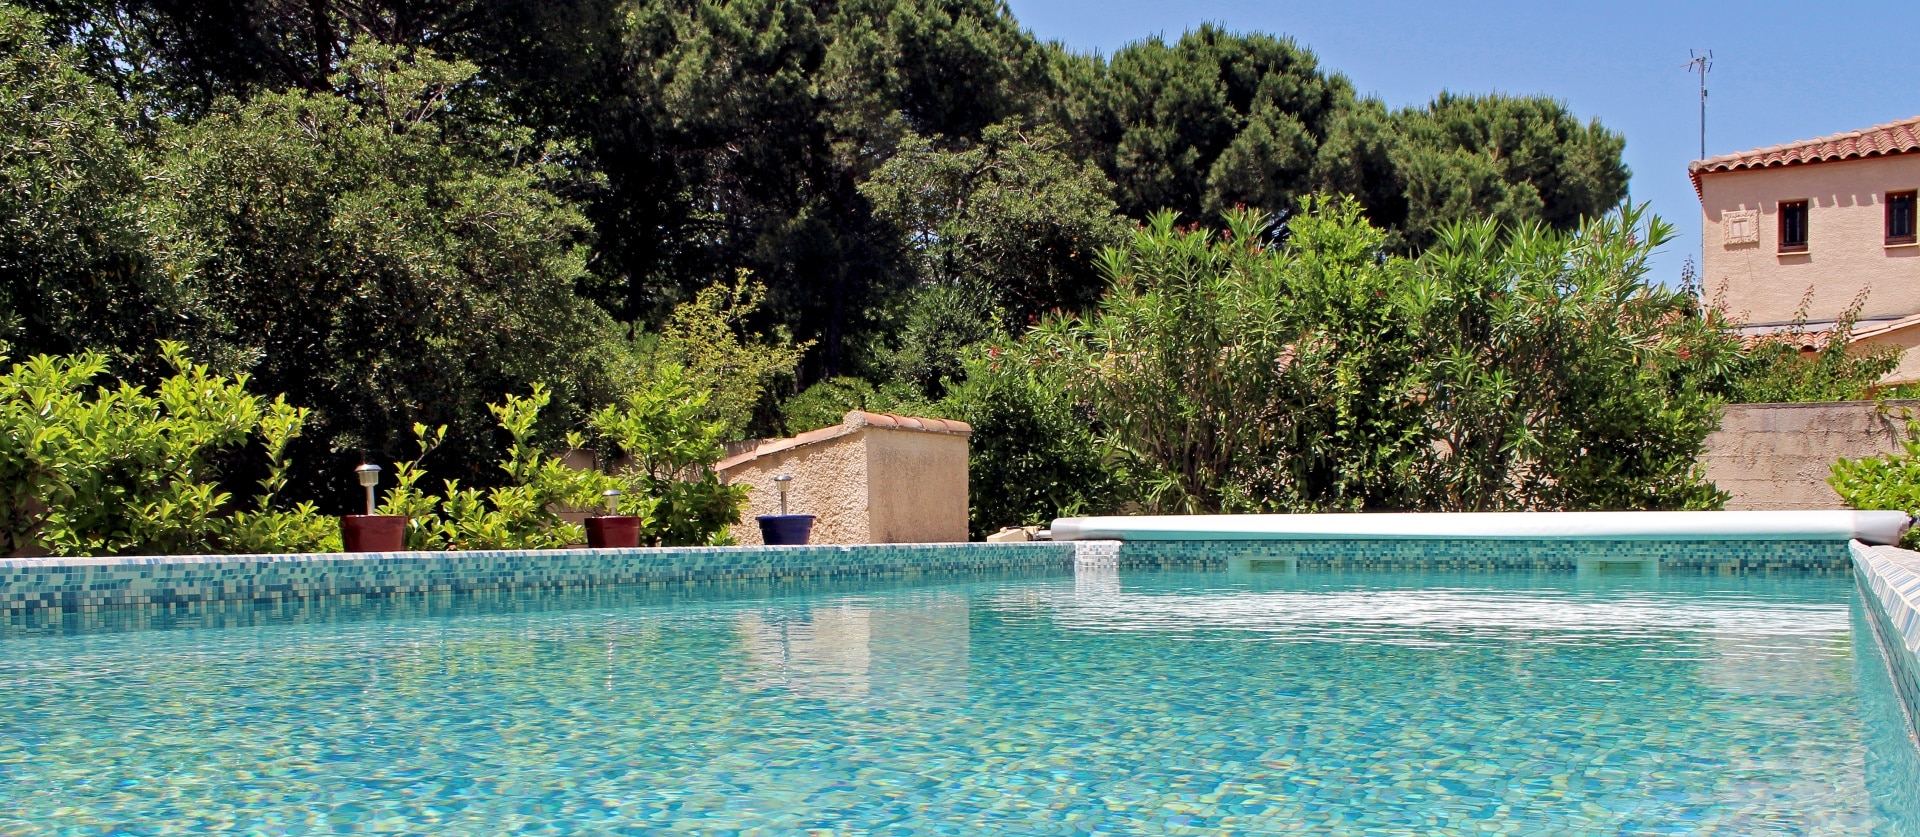 Découvrez - Camping avec piscine en Occitanie